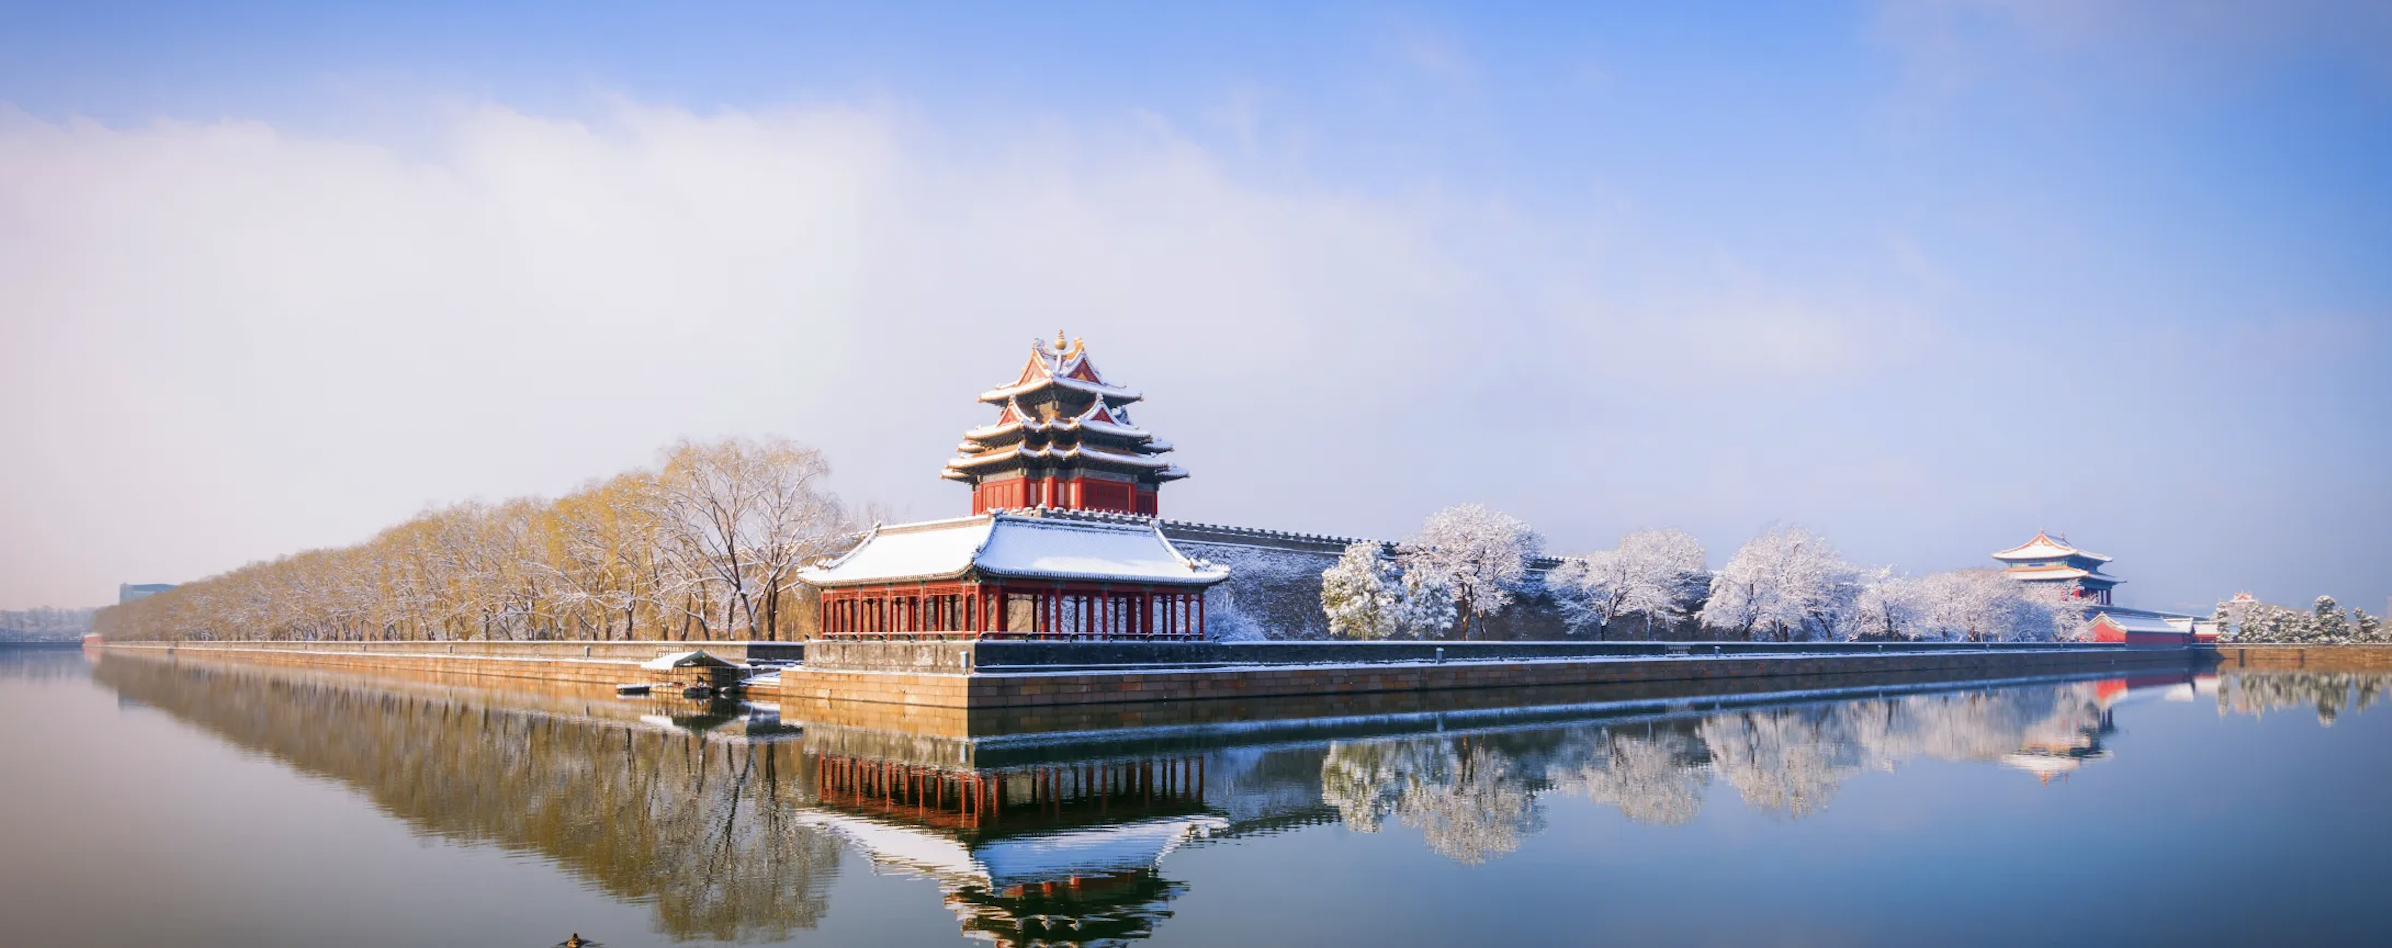 Bắc Kinh – Thành phố đông dân nhất thế giới